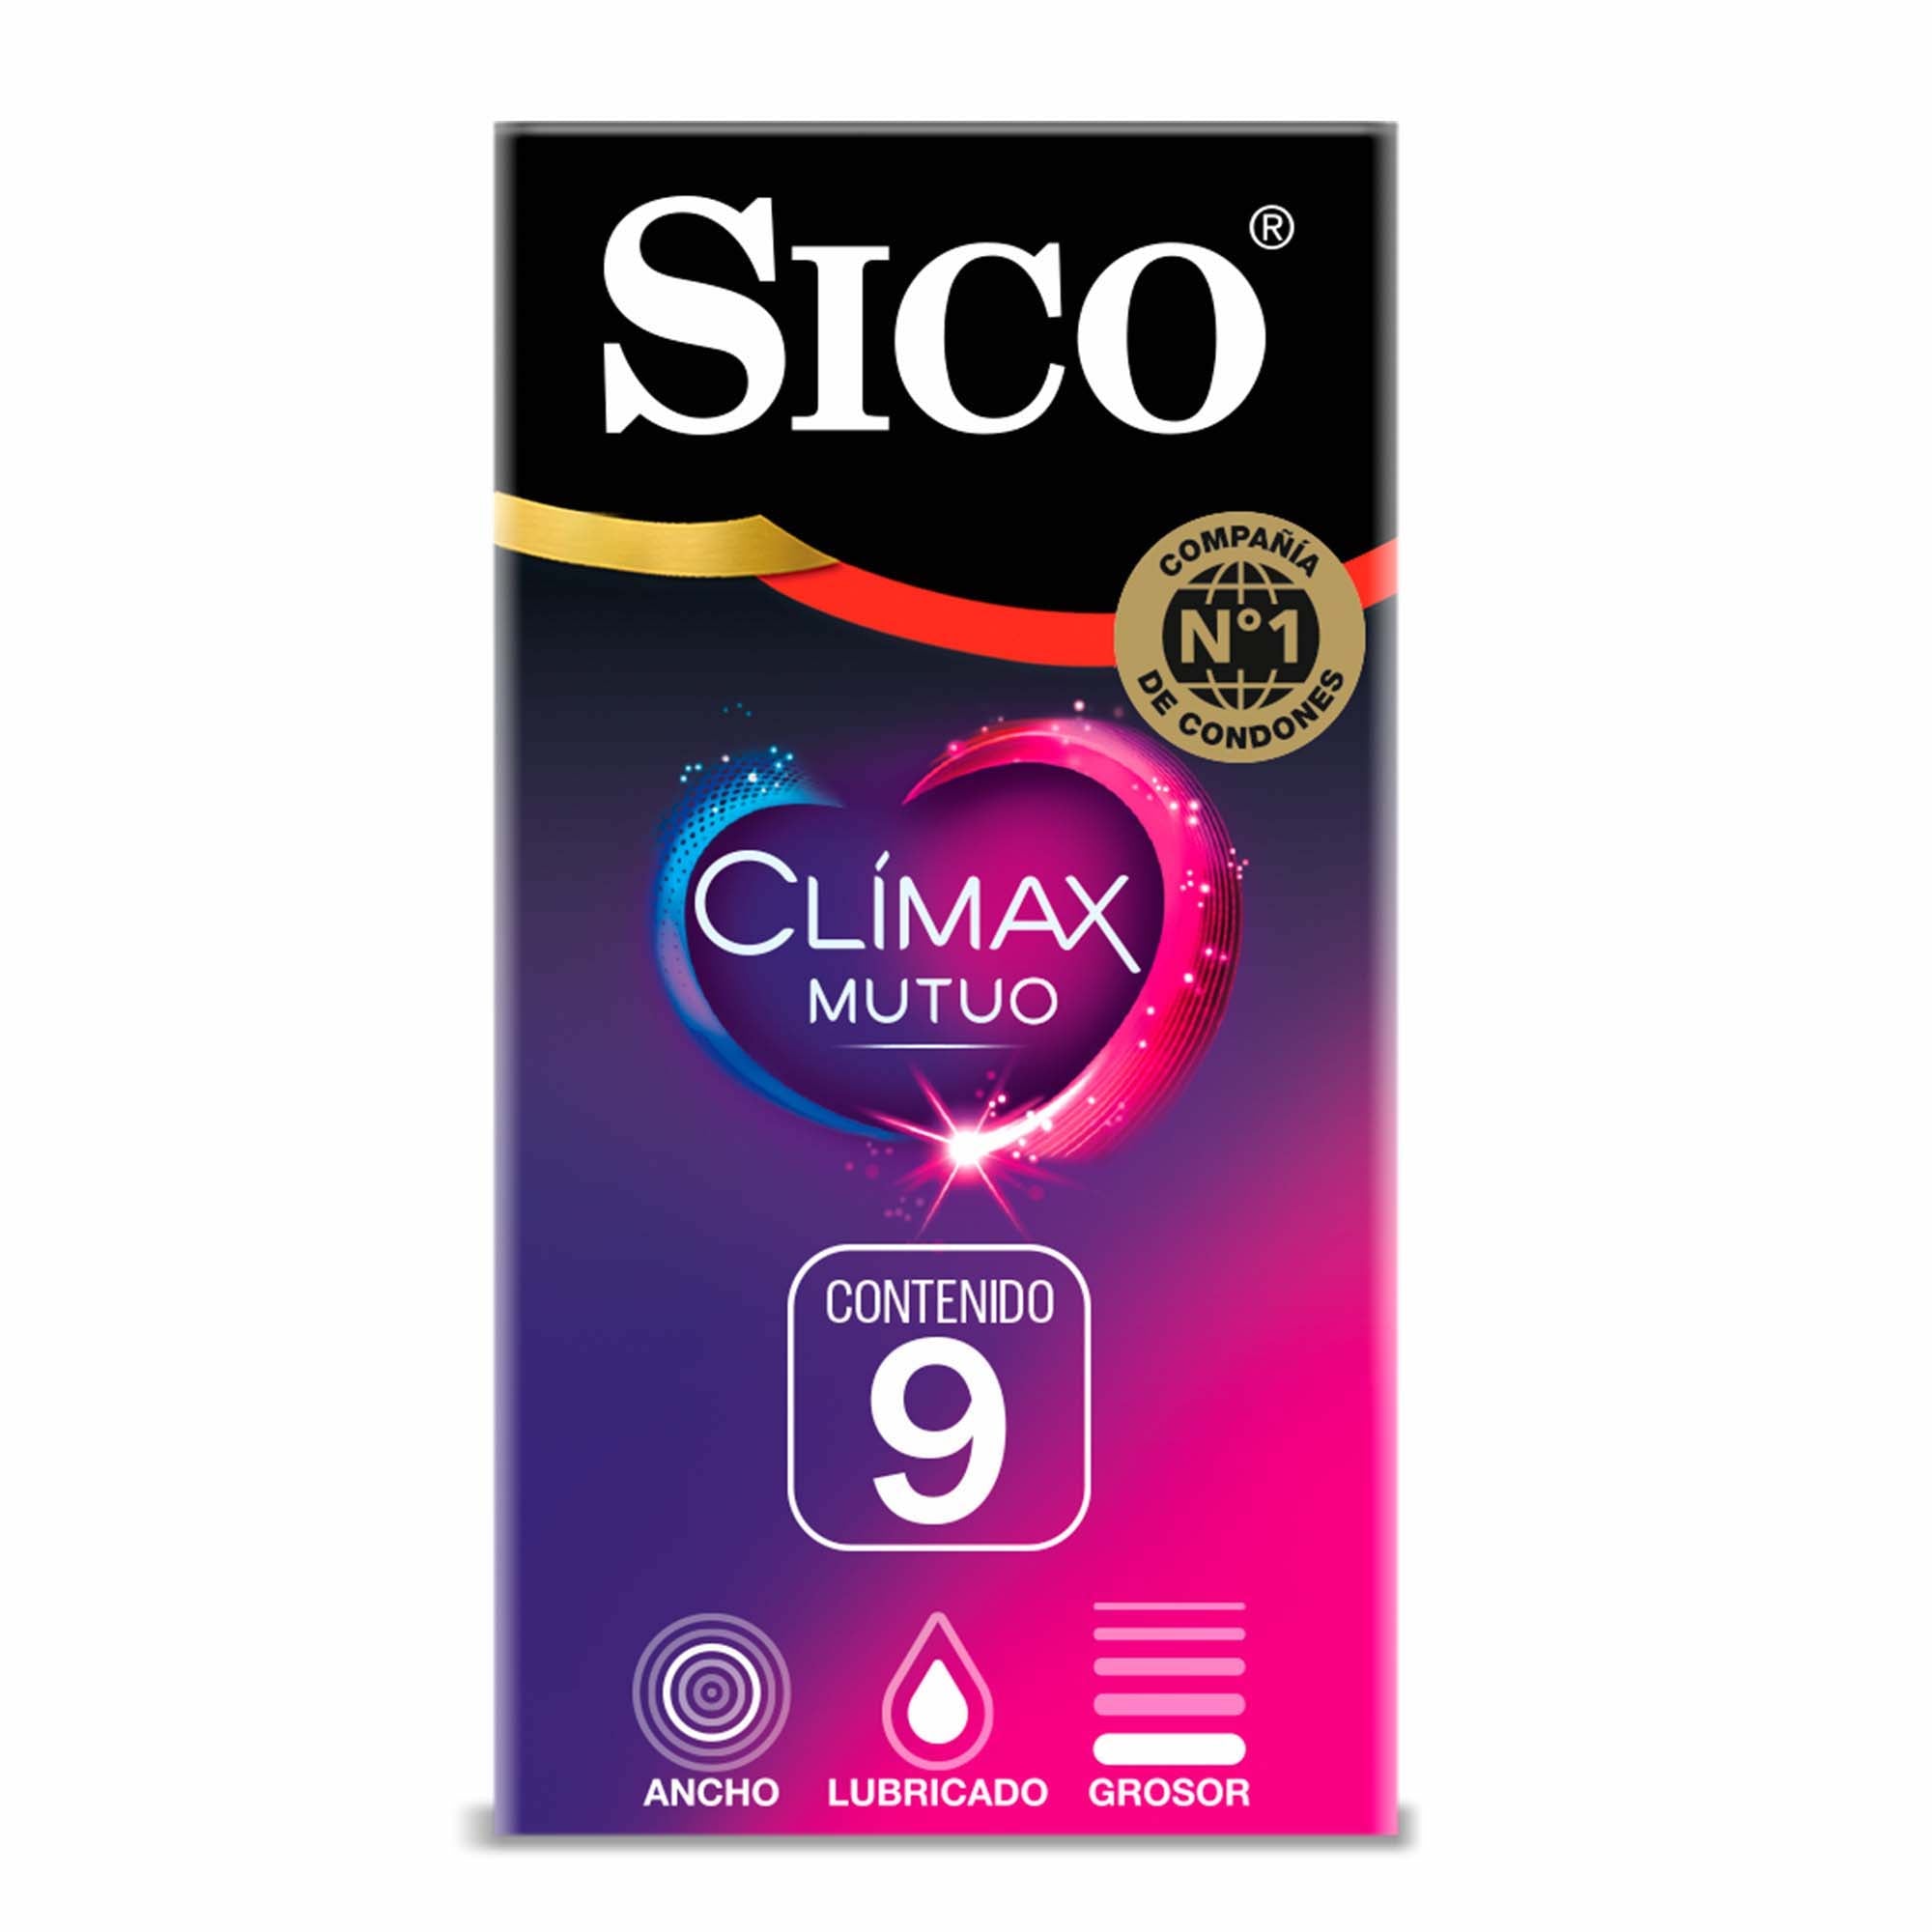 Condones Sico® Clímax Mutuo - 9 pack